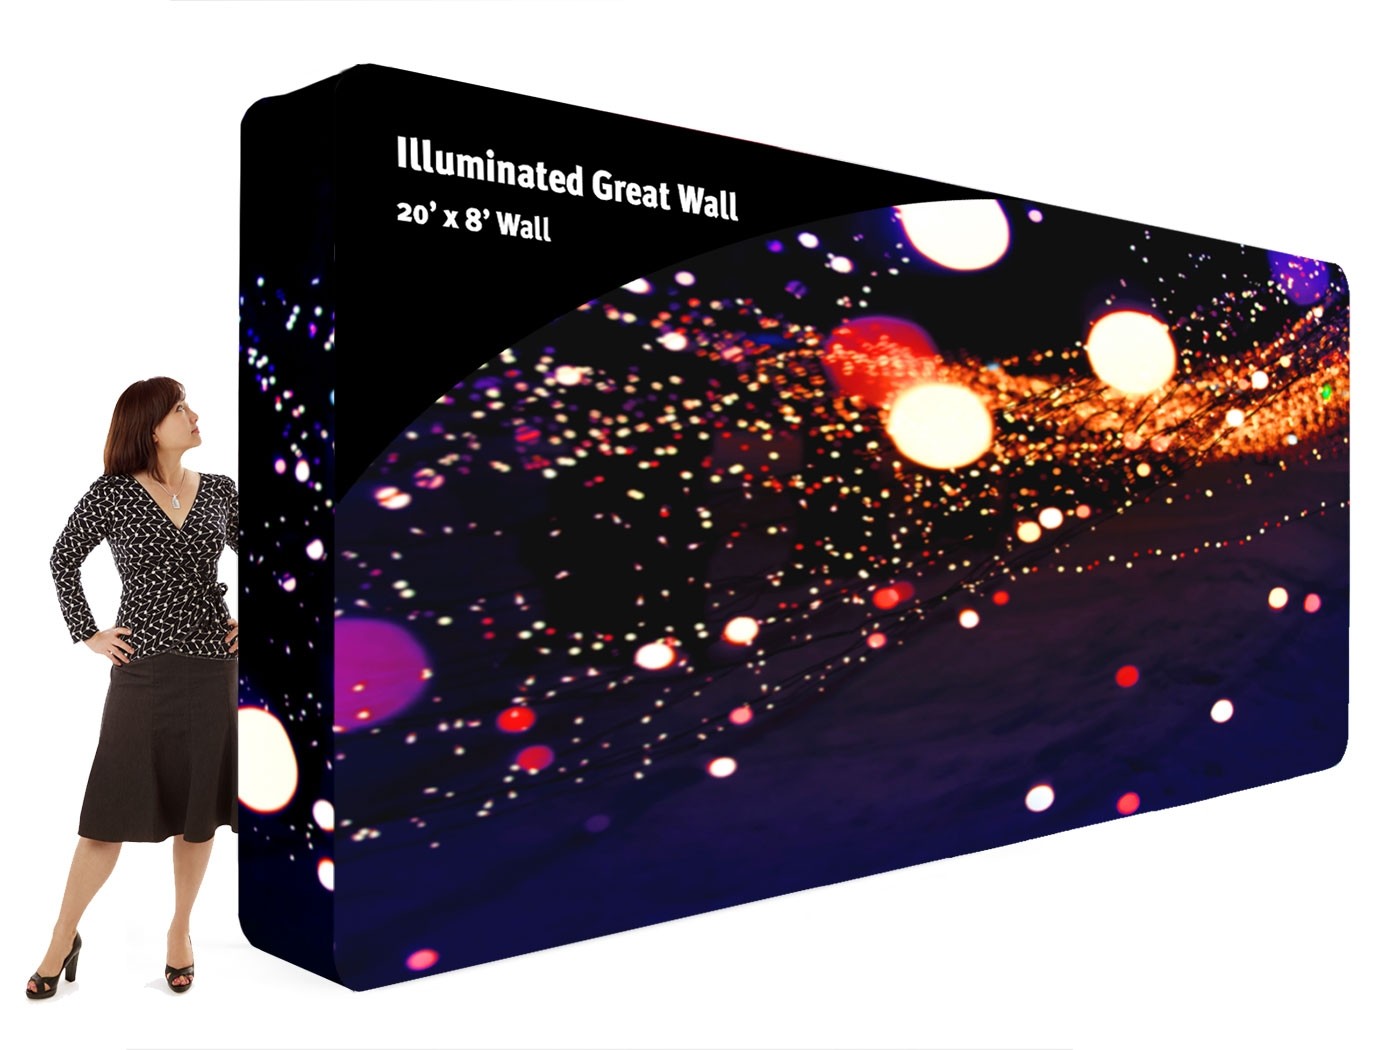 Illuminated Great Wall 20x8